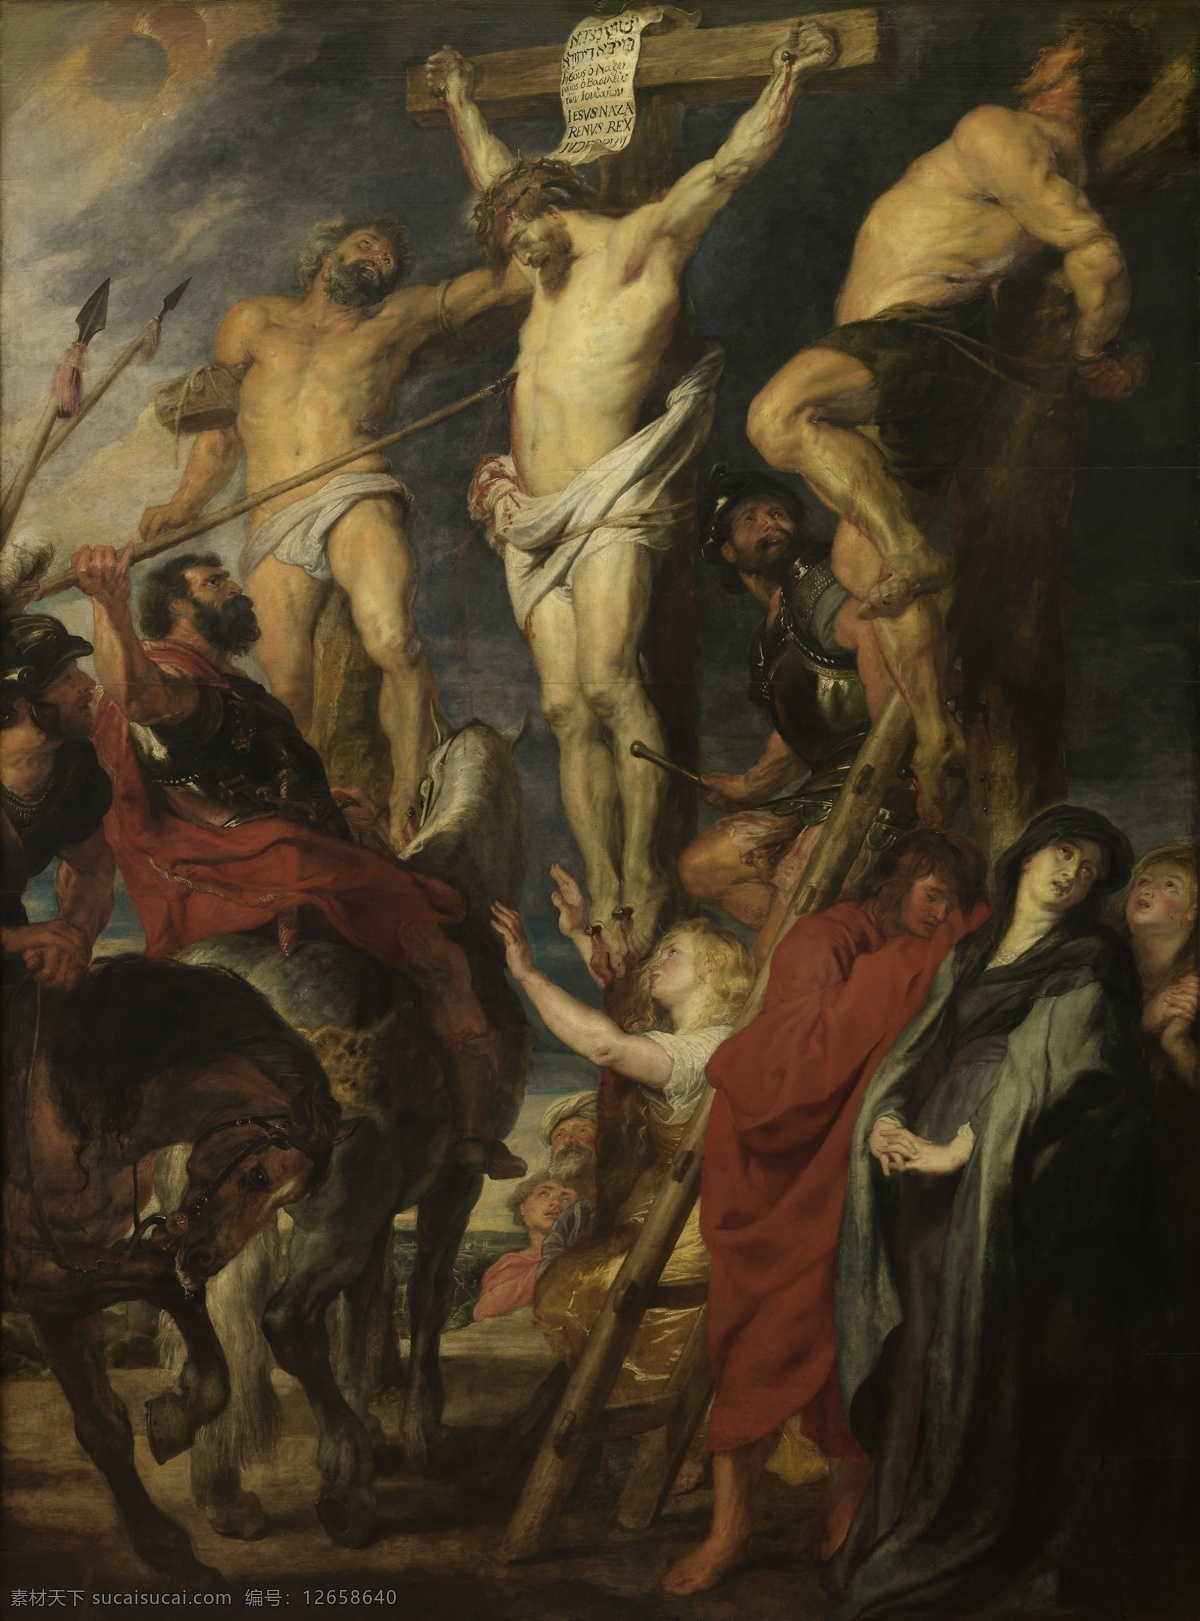 十字 架上 钉 男士 骑马 士兵图片 士兵 十字架 耶稣 基督教 油画 绘画 艺术 绘画作品 书画 书画文字 文化艺术